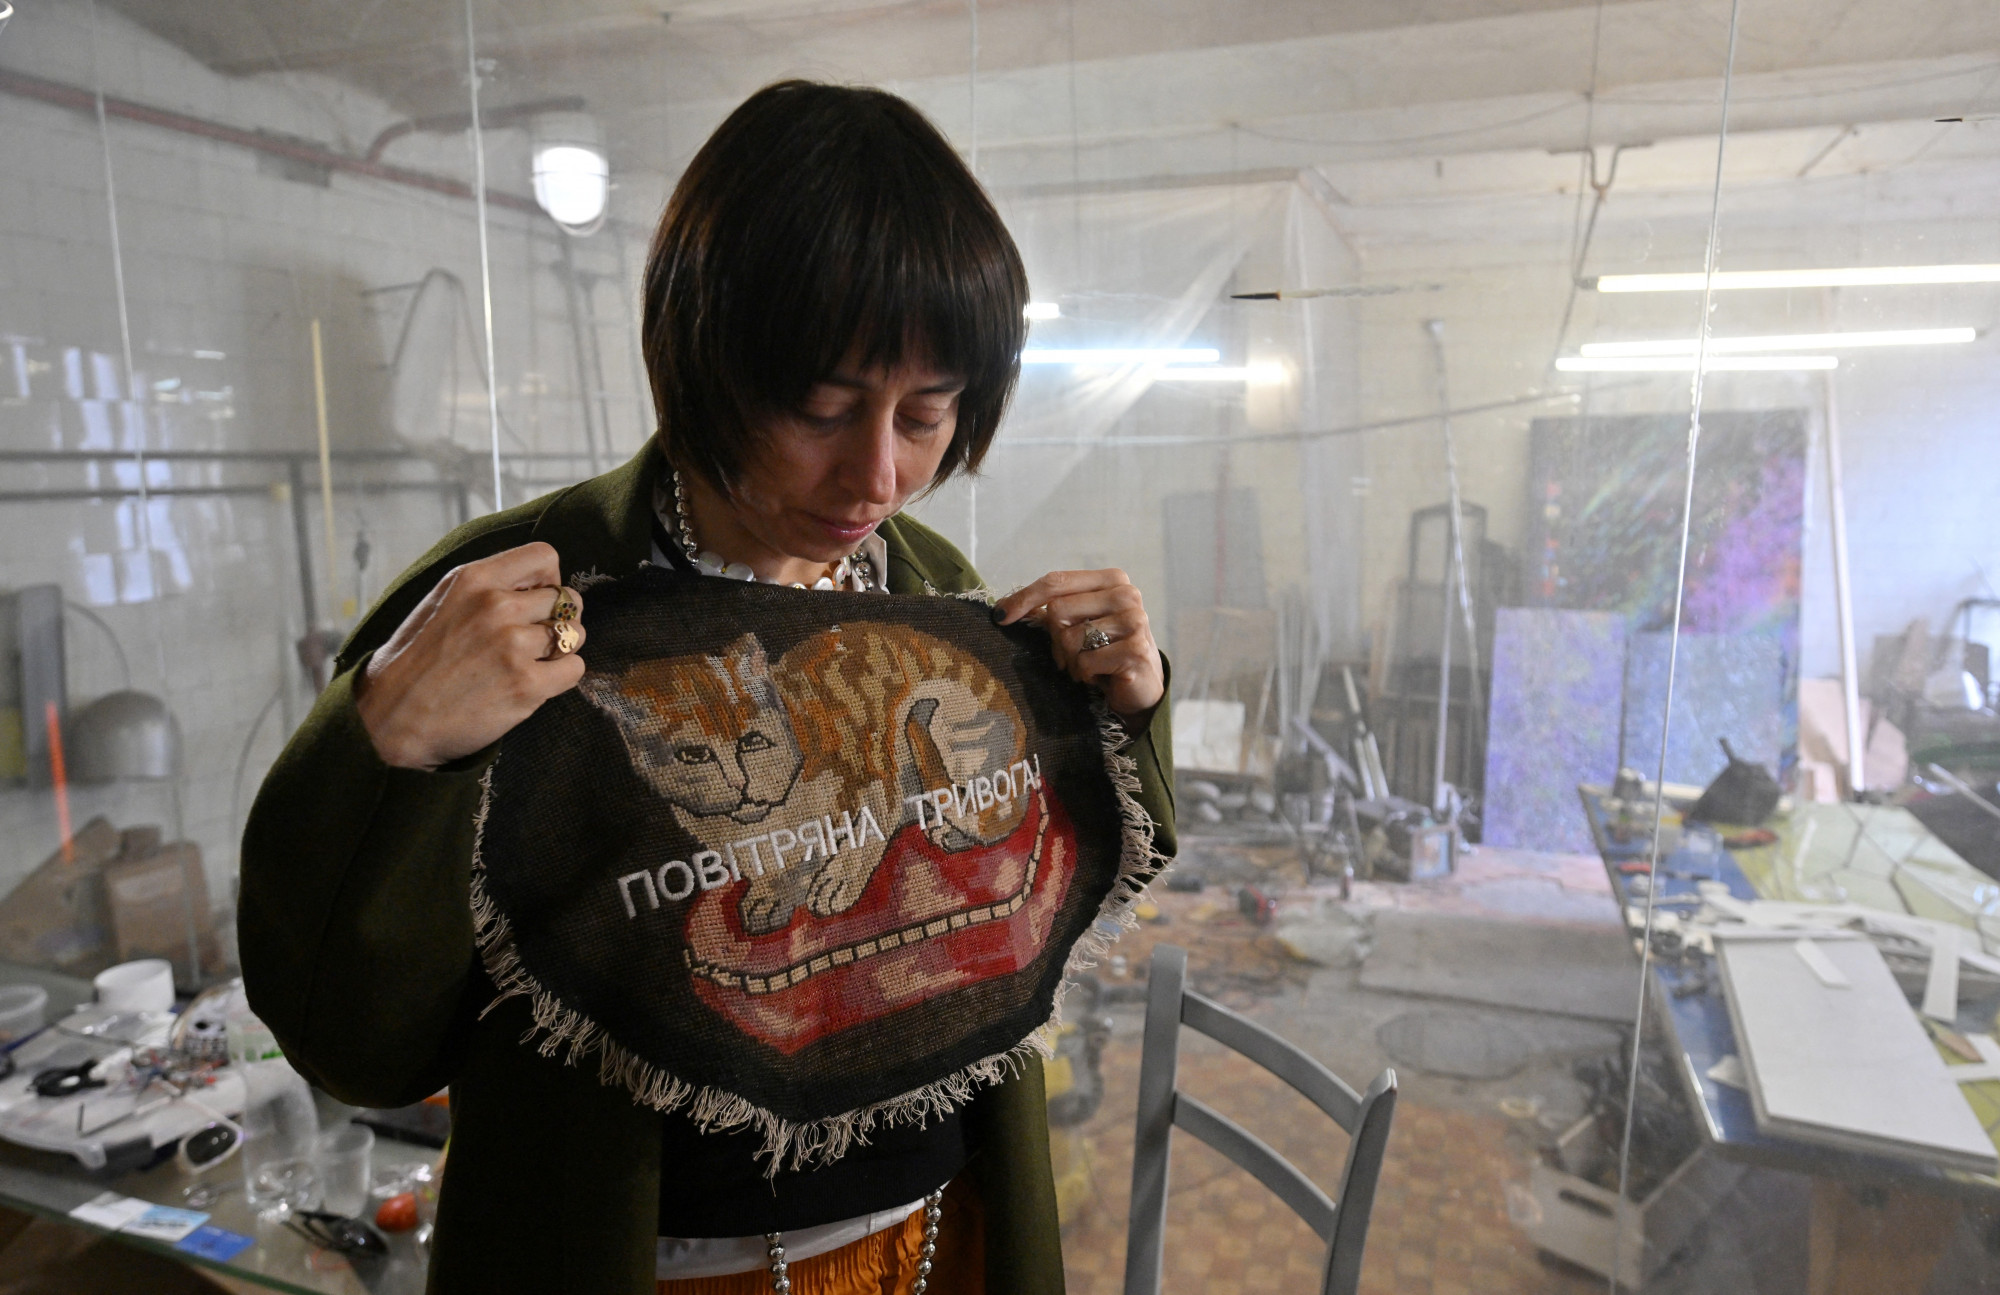 Zsana Kadirova ukrán művész kijevi műtermében mutatja be legújabb alkotását, melynek felirata: "Légi riadó". Kadirova tavaly februárban, az orosz támadás kezdetén haszontalannak érezte a munkáját, ám miután kiderült, hogy a galériák világszerte vevők a háború inspirálta alkotásokra, munkához látott, hogy a műveiből befolyó bevételekből a szenvedő civileket és a katonákat támogathassa.